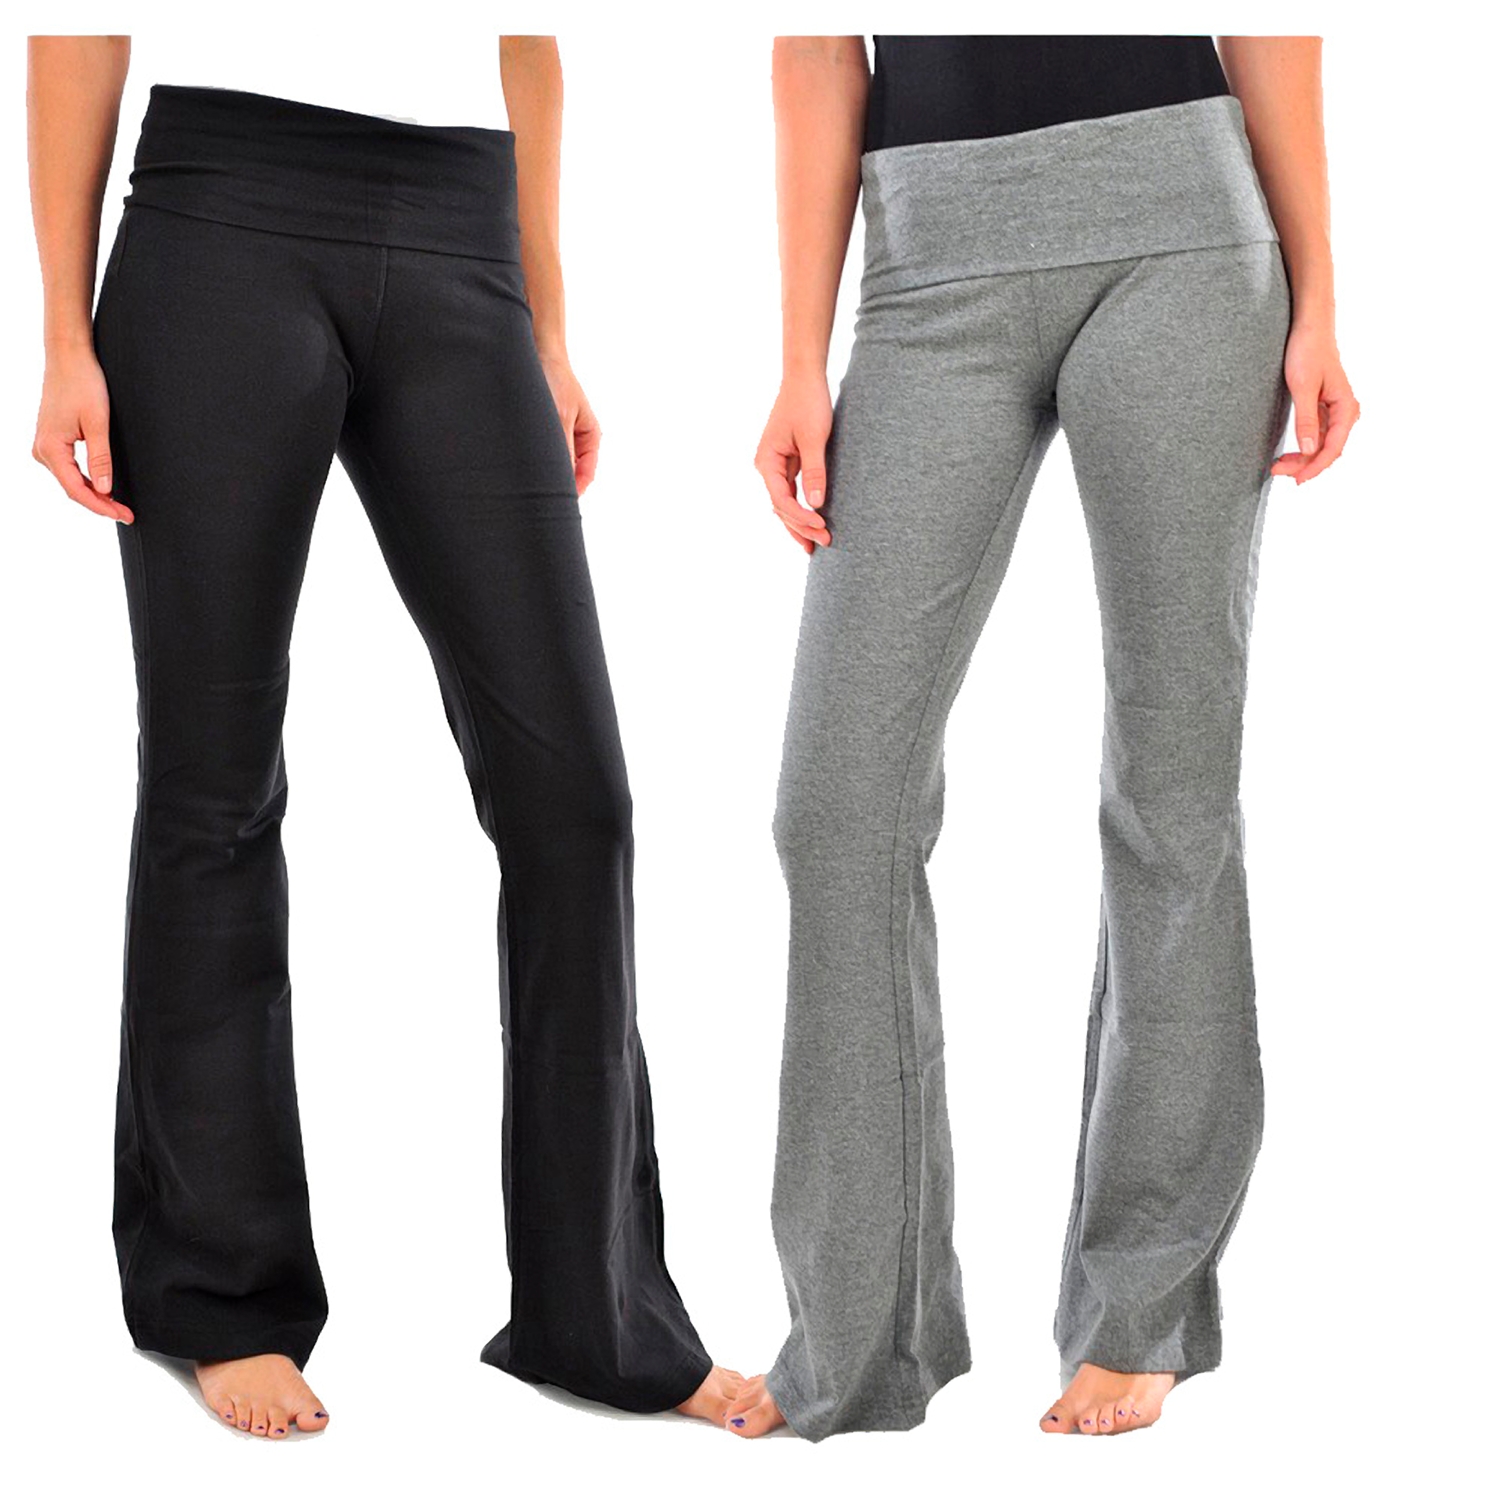 Ladies Yoga Pants -YP1000 - image 2 of 2